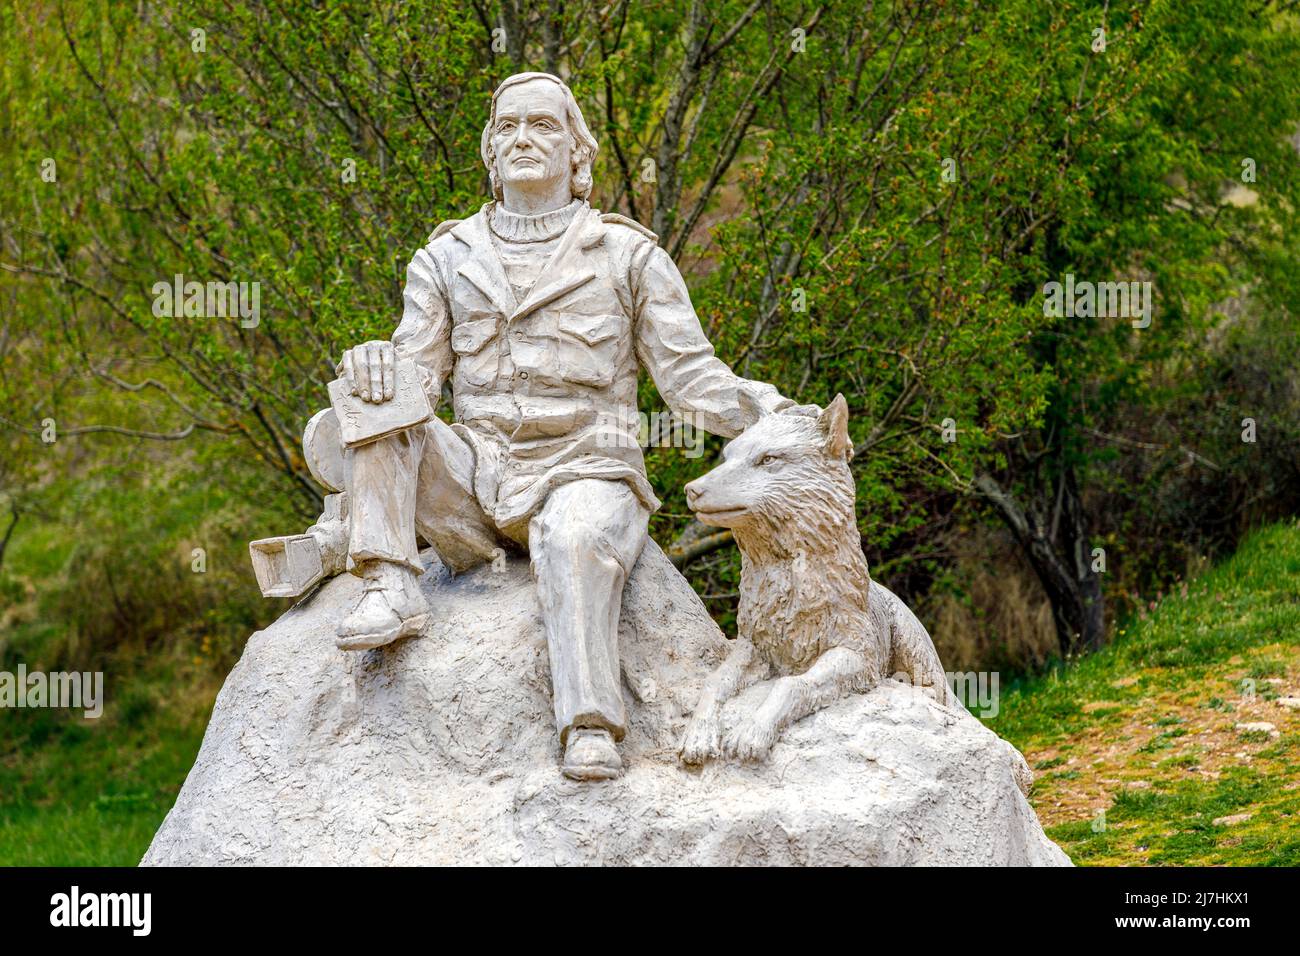 Poza de la Sal, Spain - May 9, 2022: Sculpture by Juan Villa at Mirador de la Bureba, monument to Felix Rodriguez of the fountain in Poza de La Sal, d Stock Photo